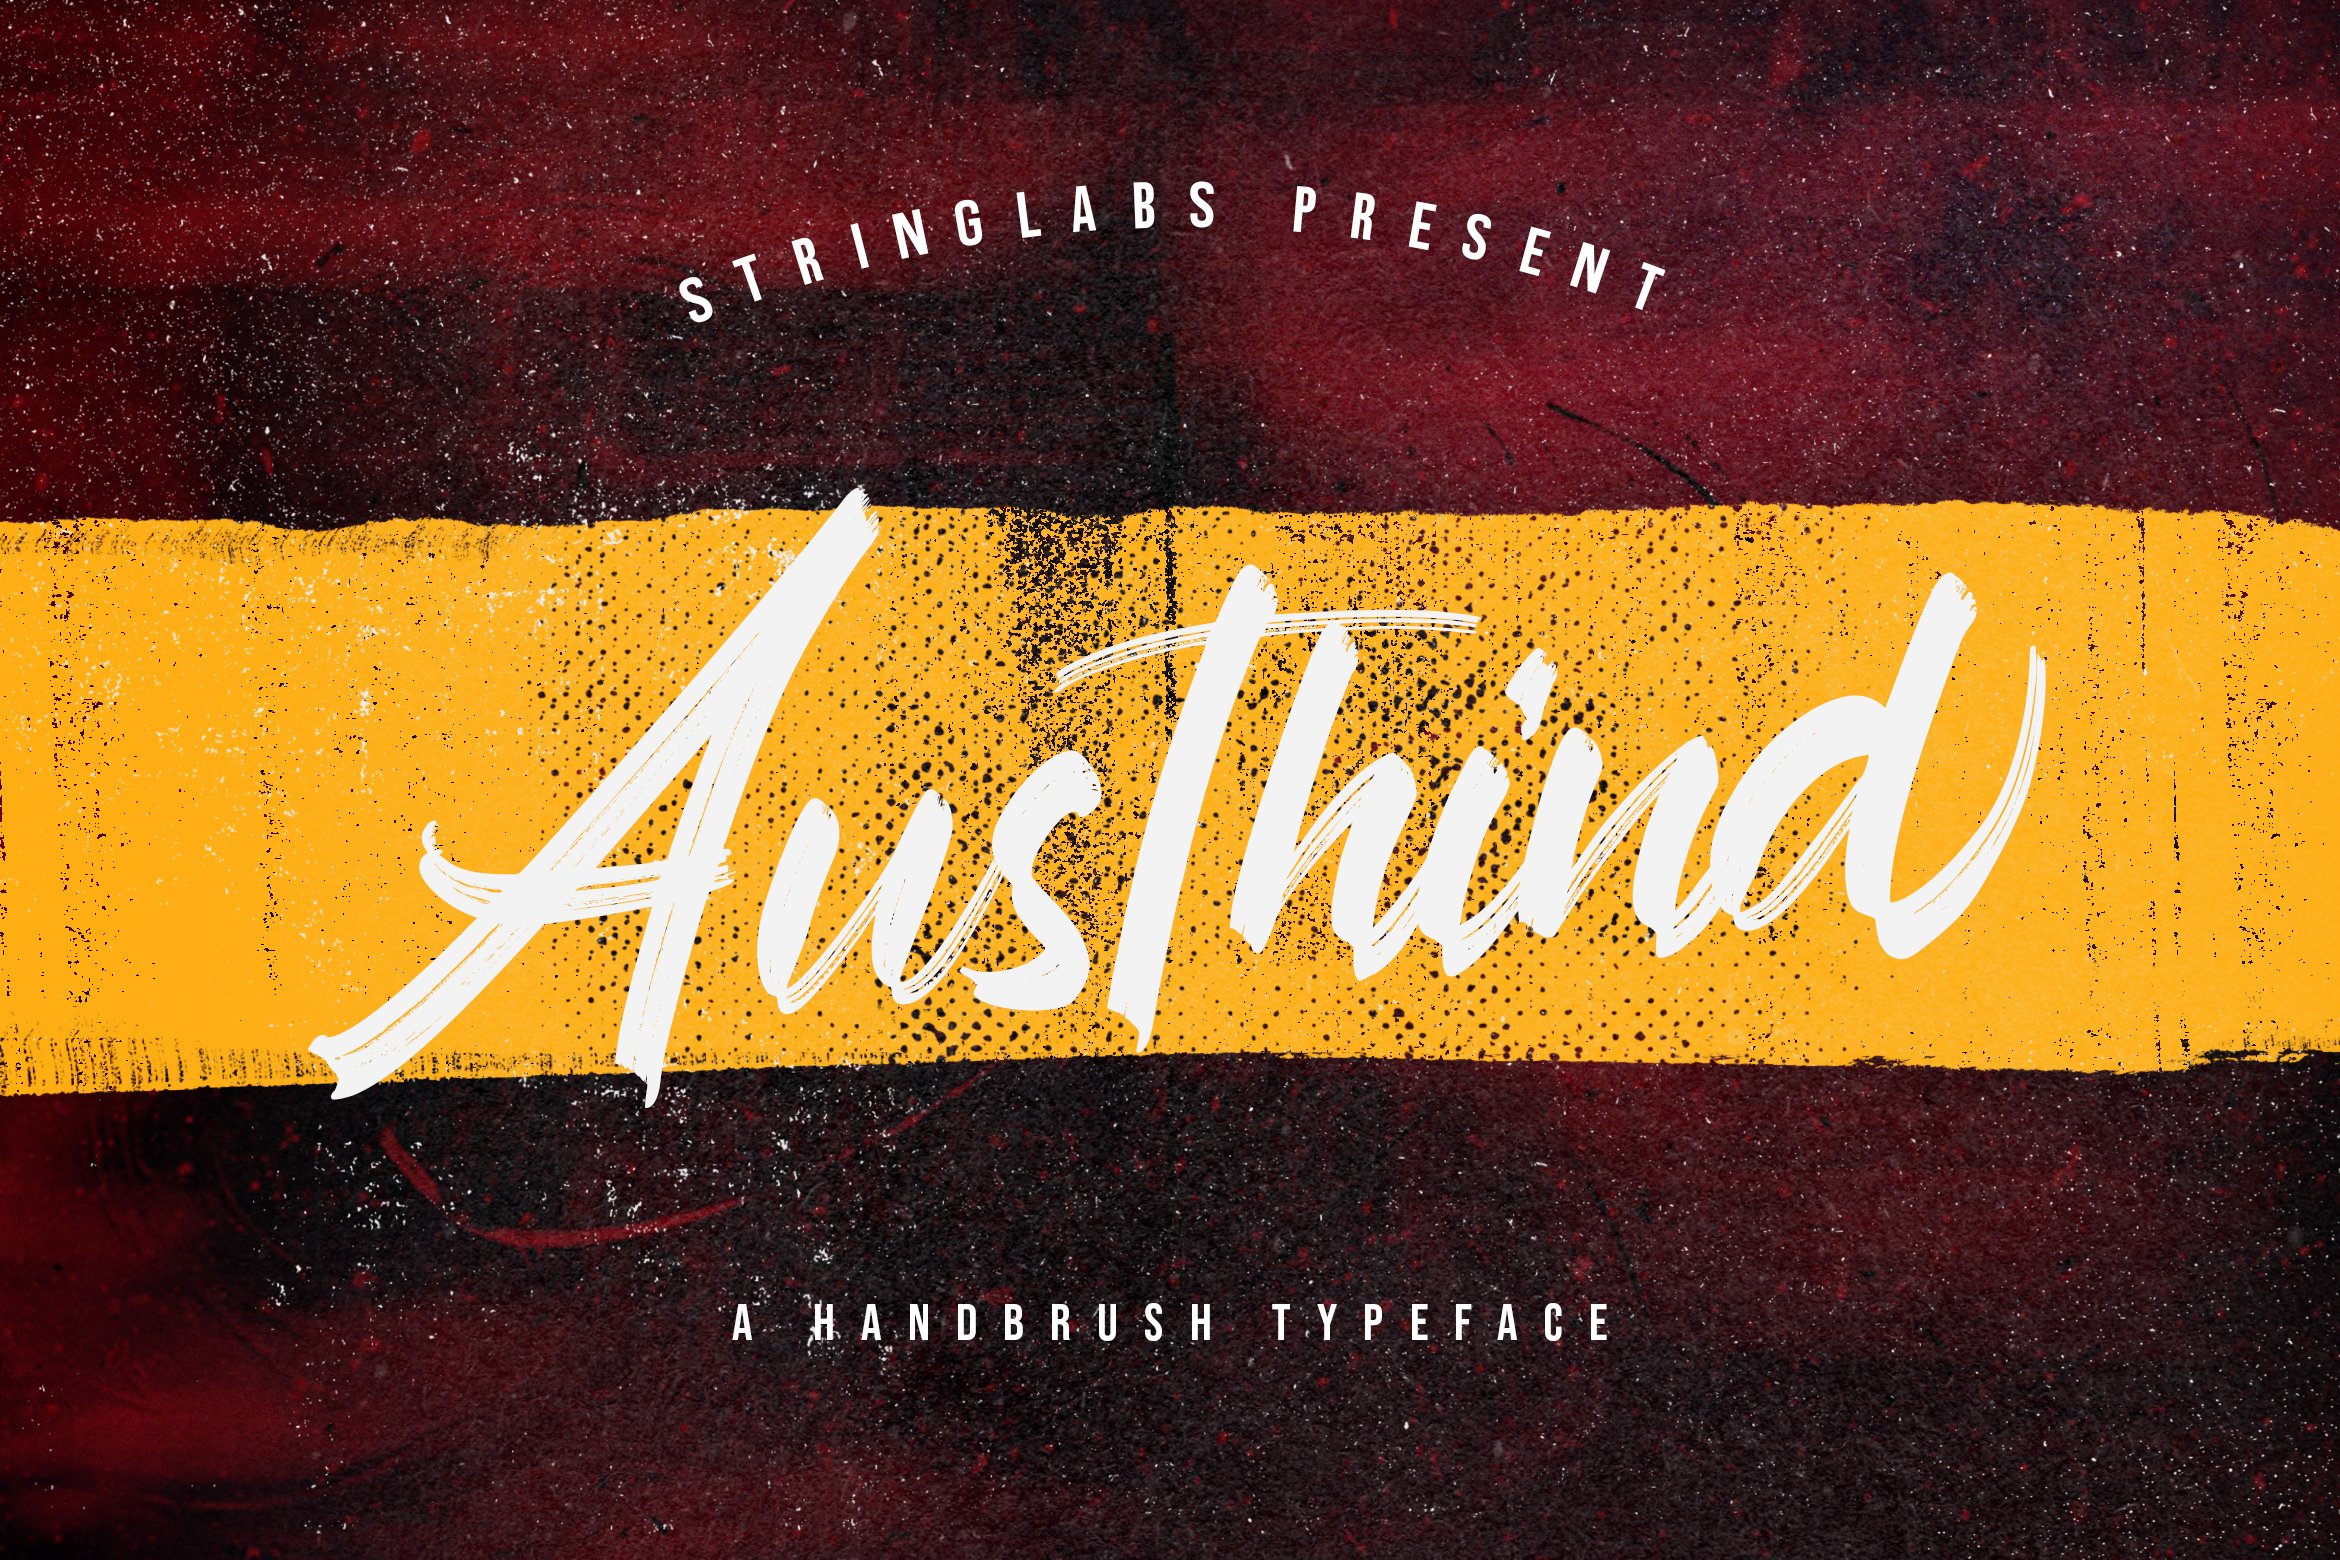 Austhind - Stylish Brush Font cover image.